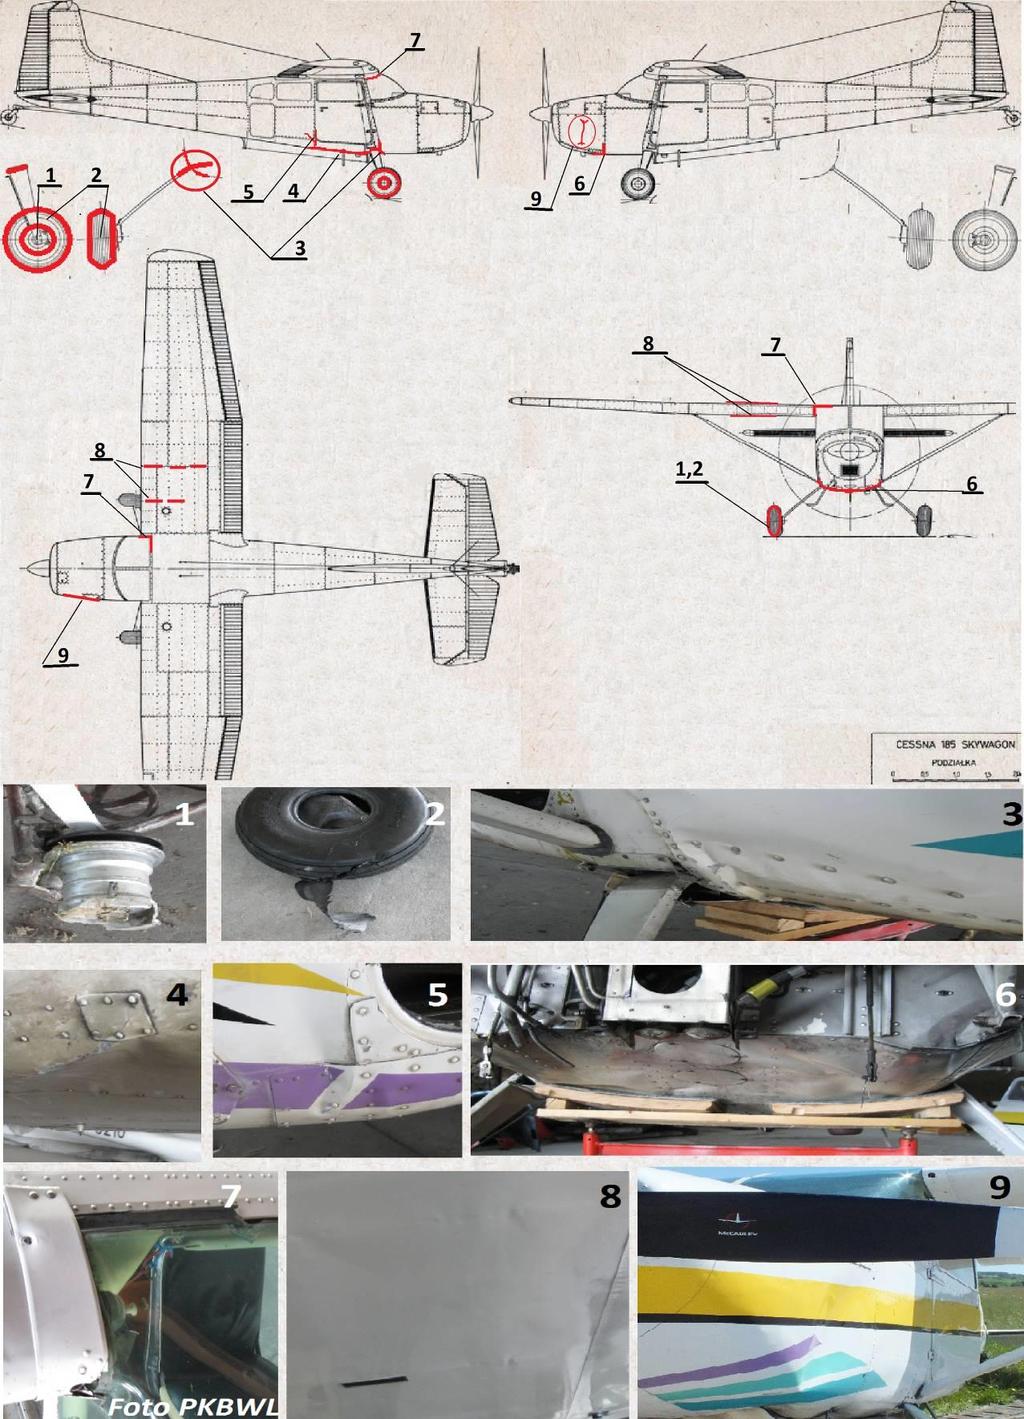 kabiny i zafalowane poszycie prawego skrzydła i lewej strony maski silnika. Ilustracja nr 1.